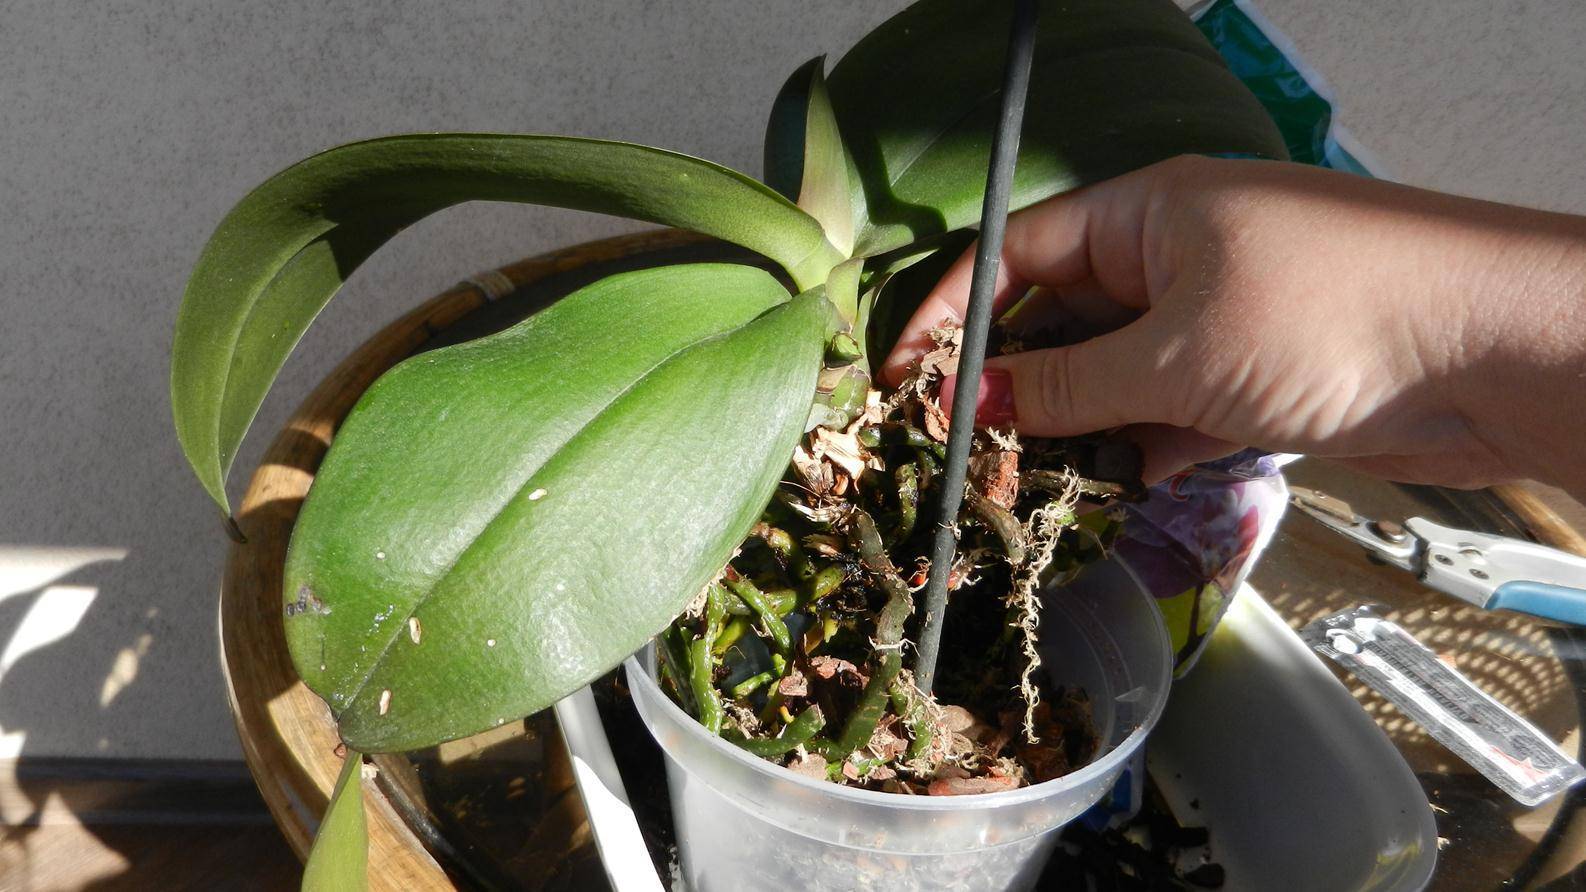 Как правильно подойти к выбору горшка для орхидеи: советы опытных цветоводов